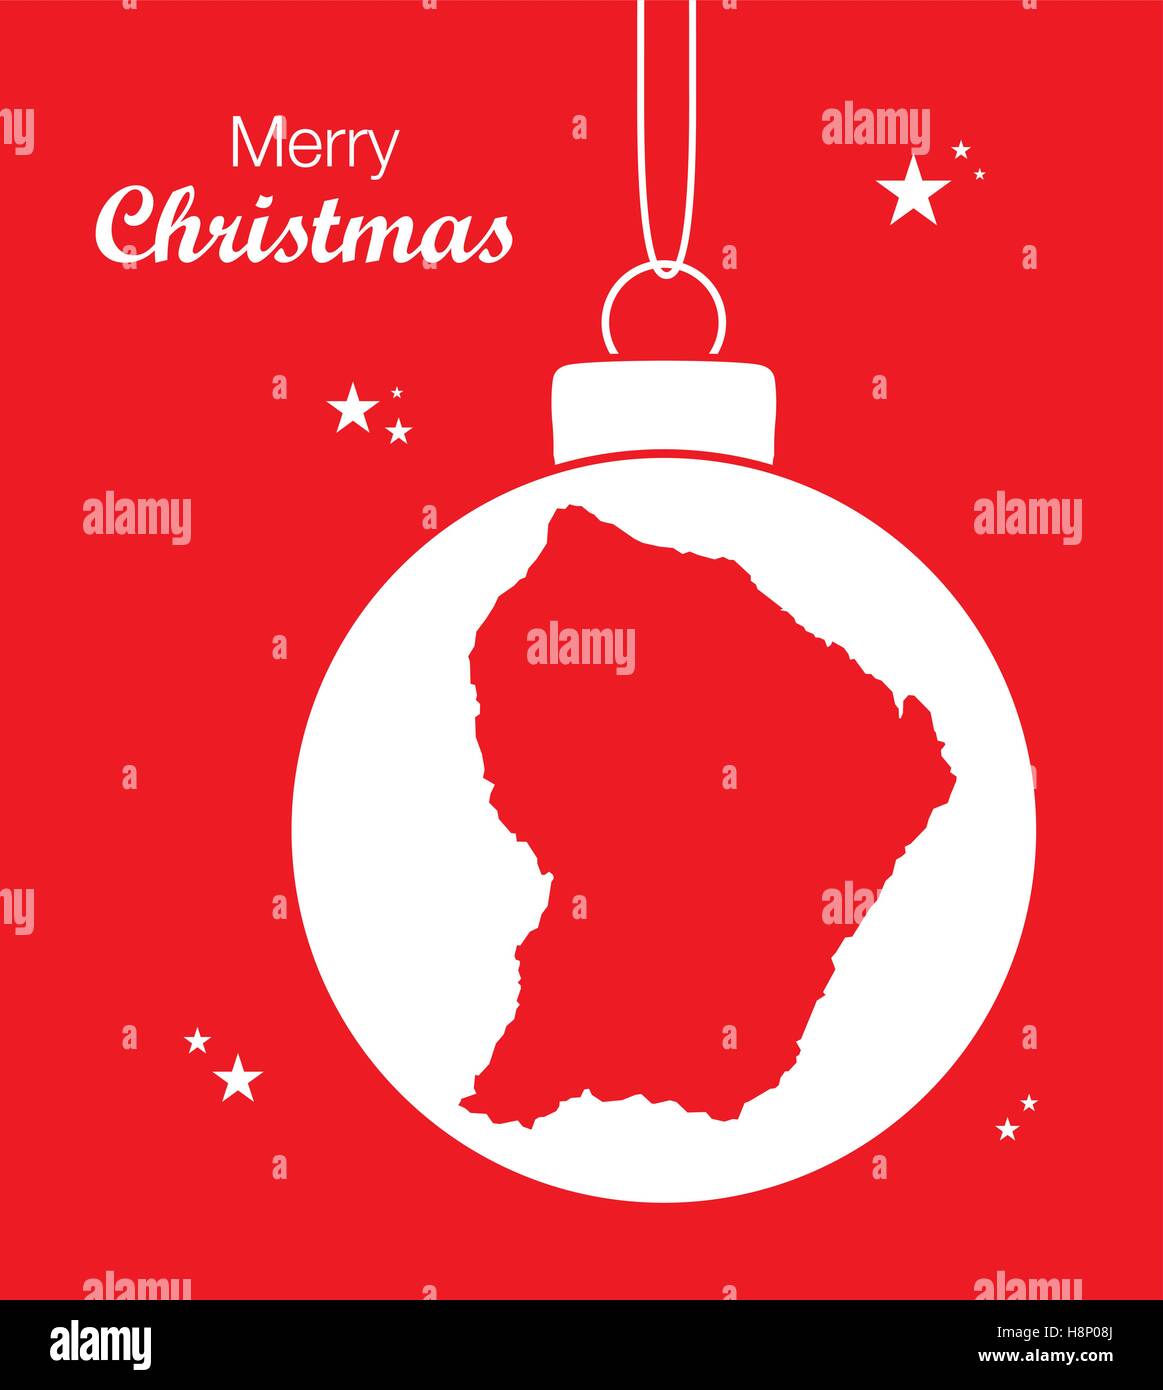 Joyeux Noël thème d'illustration avec la carte de la Guyane française Illustration de Vecteur